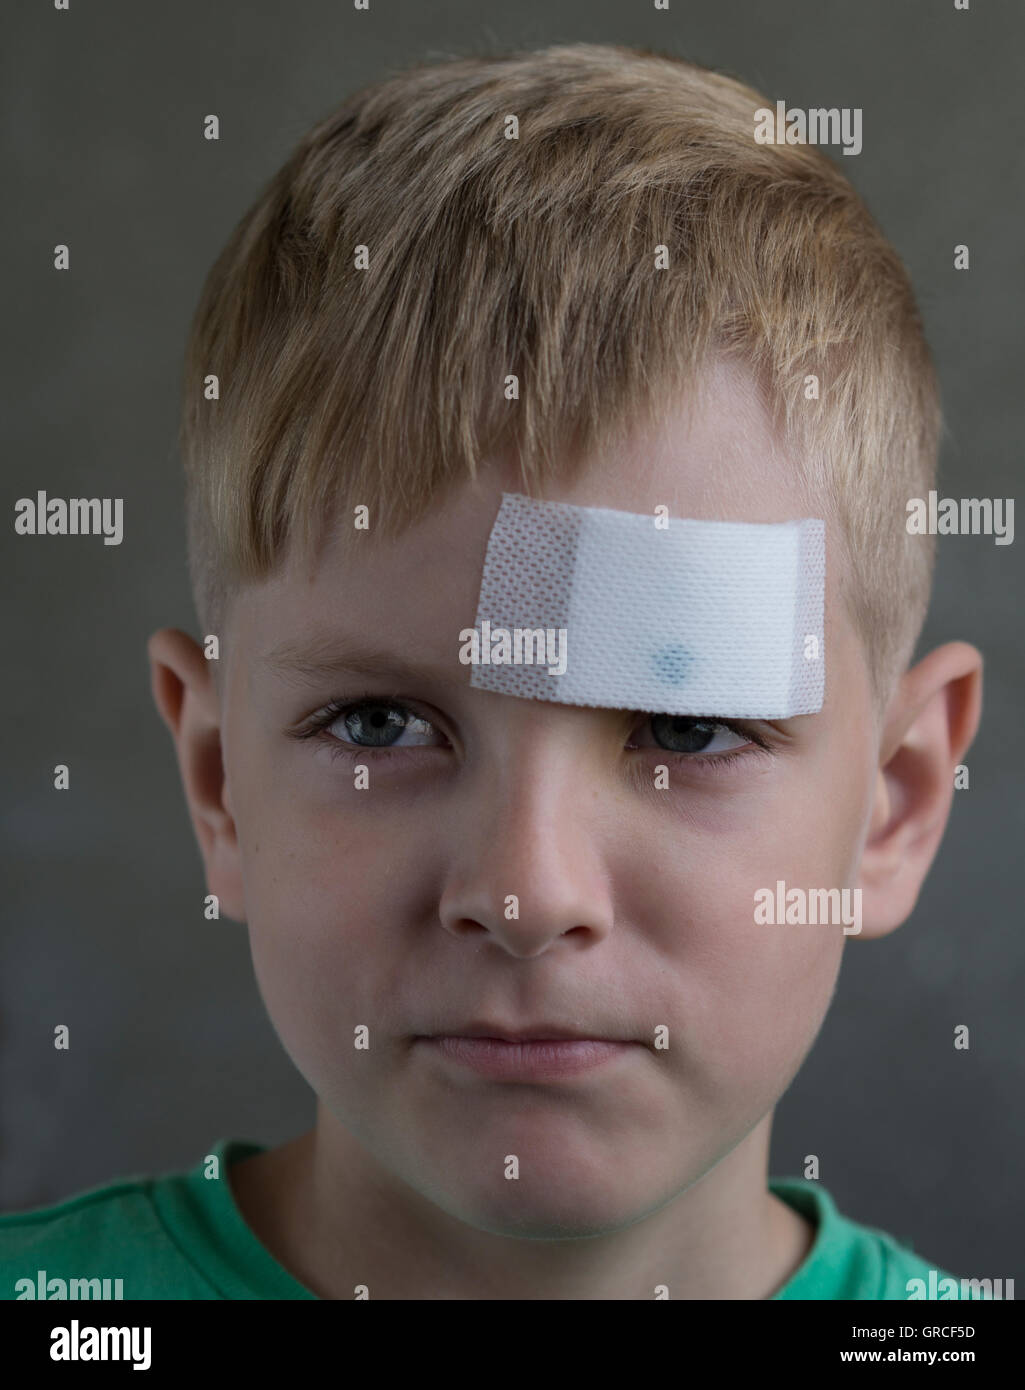 Young boy avec une blessure sur son front en plâtre Banque D'Images